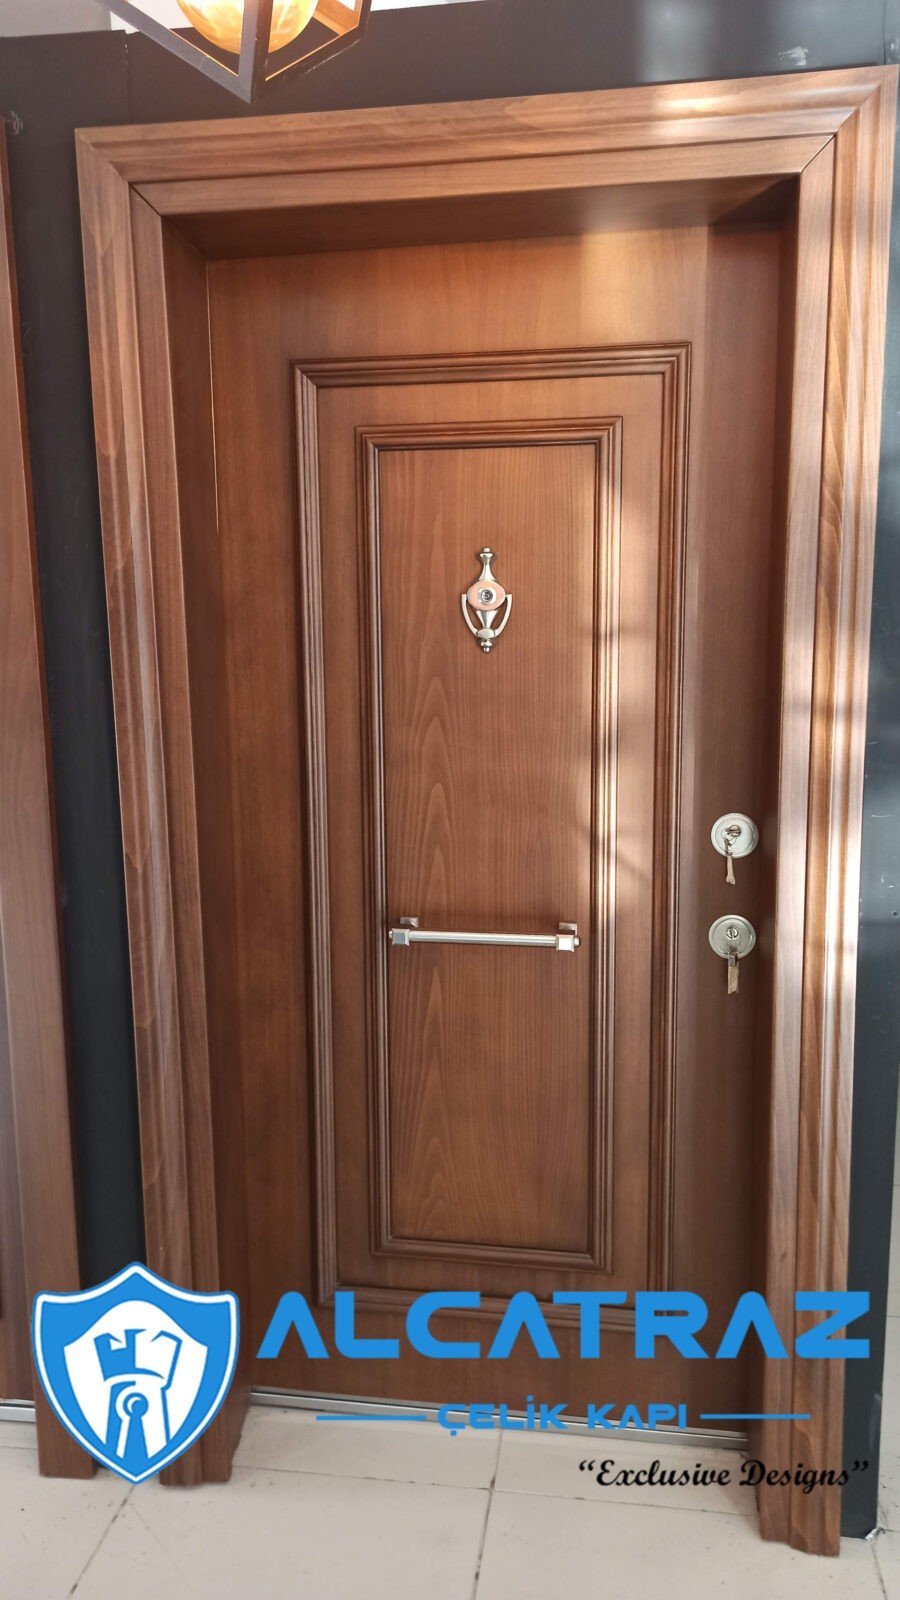 Lüks Çelik Kapı Villa Kapısı Klasik Özel Tasarım Kompozit Çelik Kapı Modelleri Alcatraz Çelik Kapı dış kapı